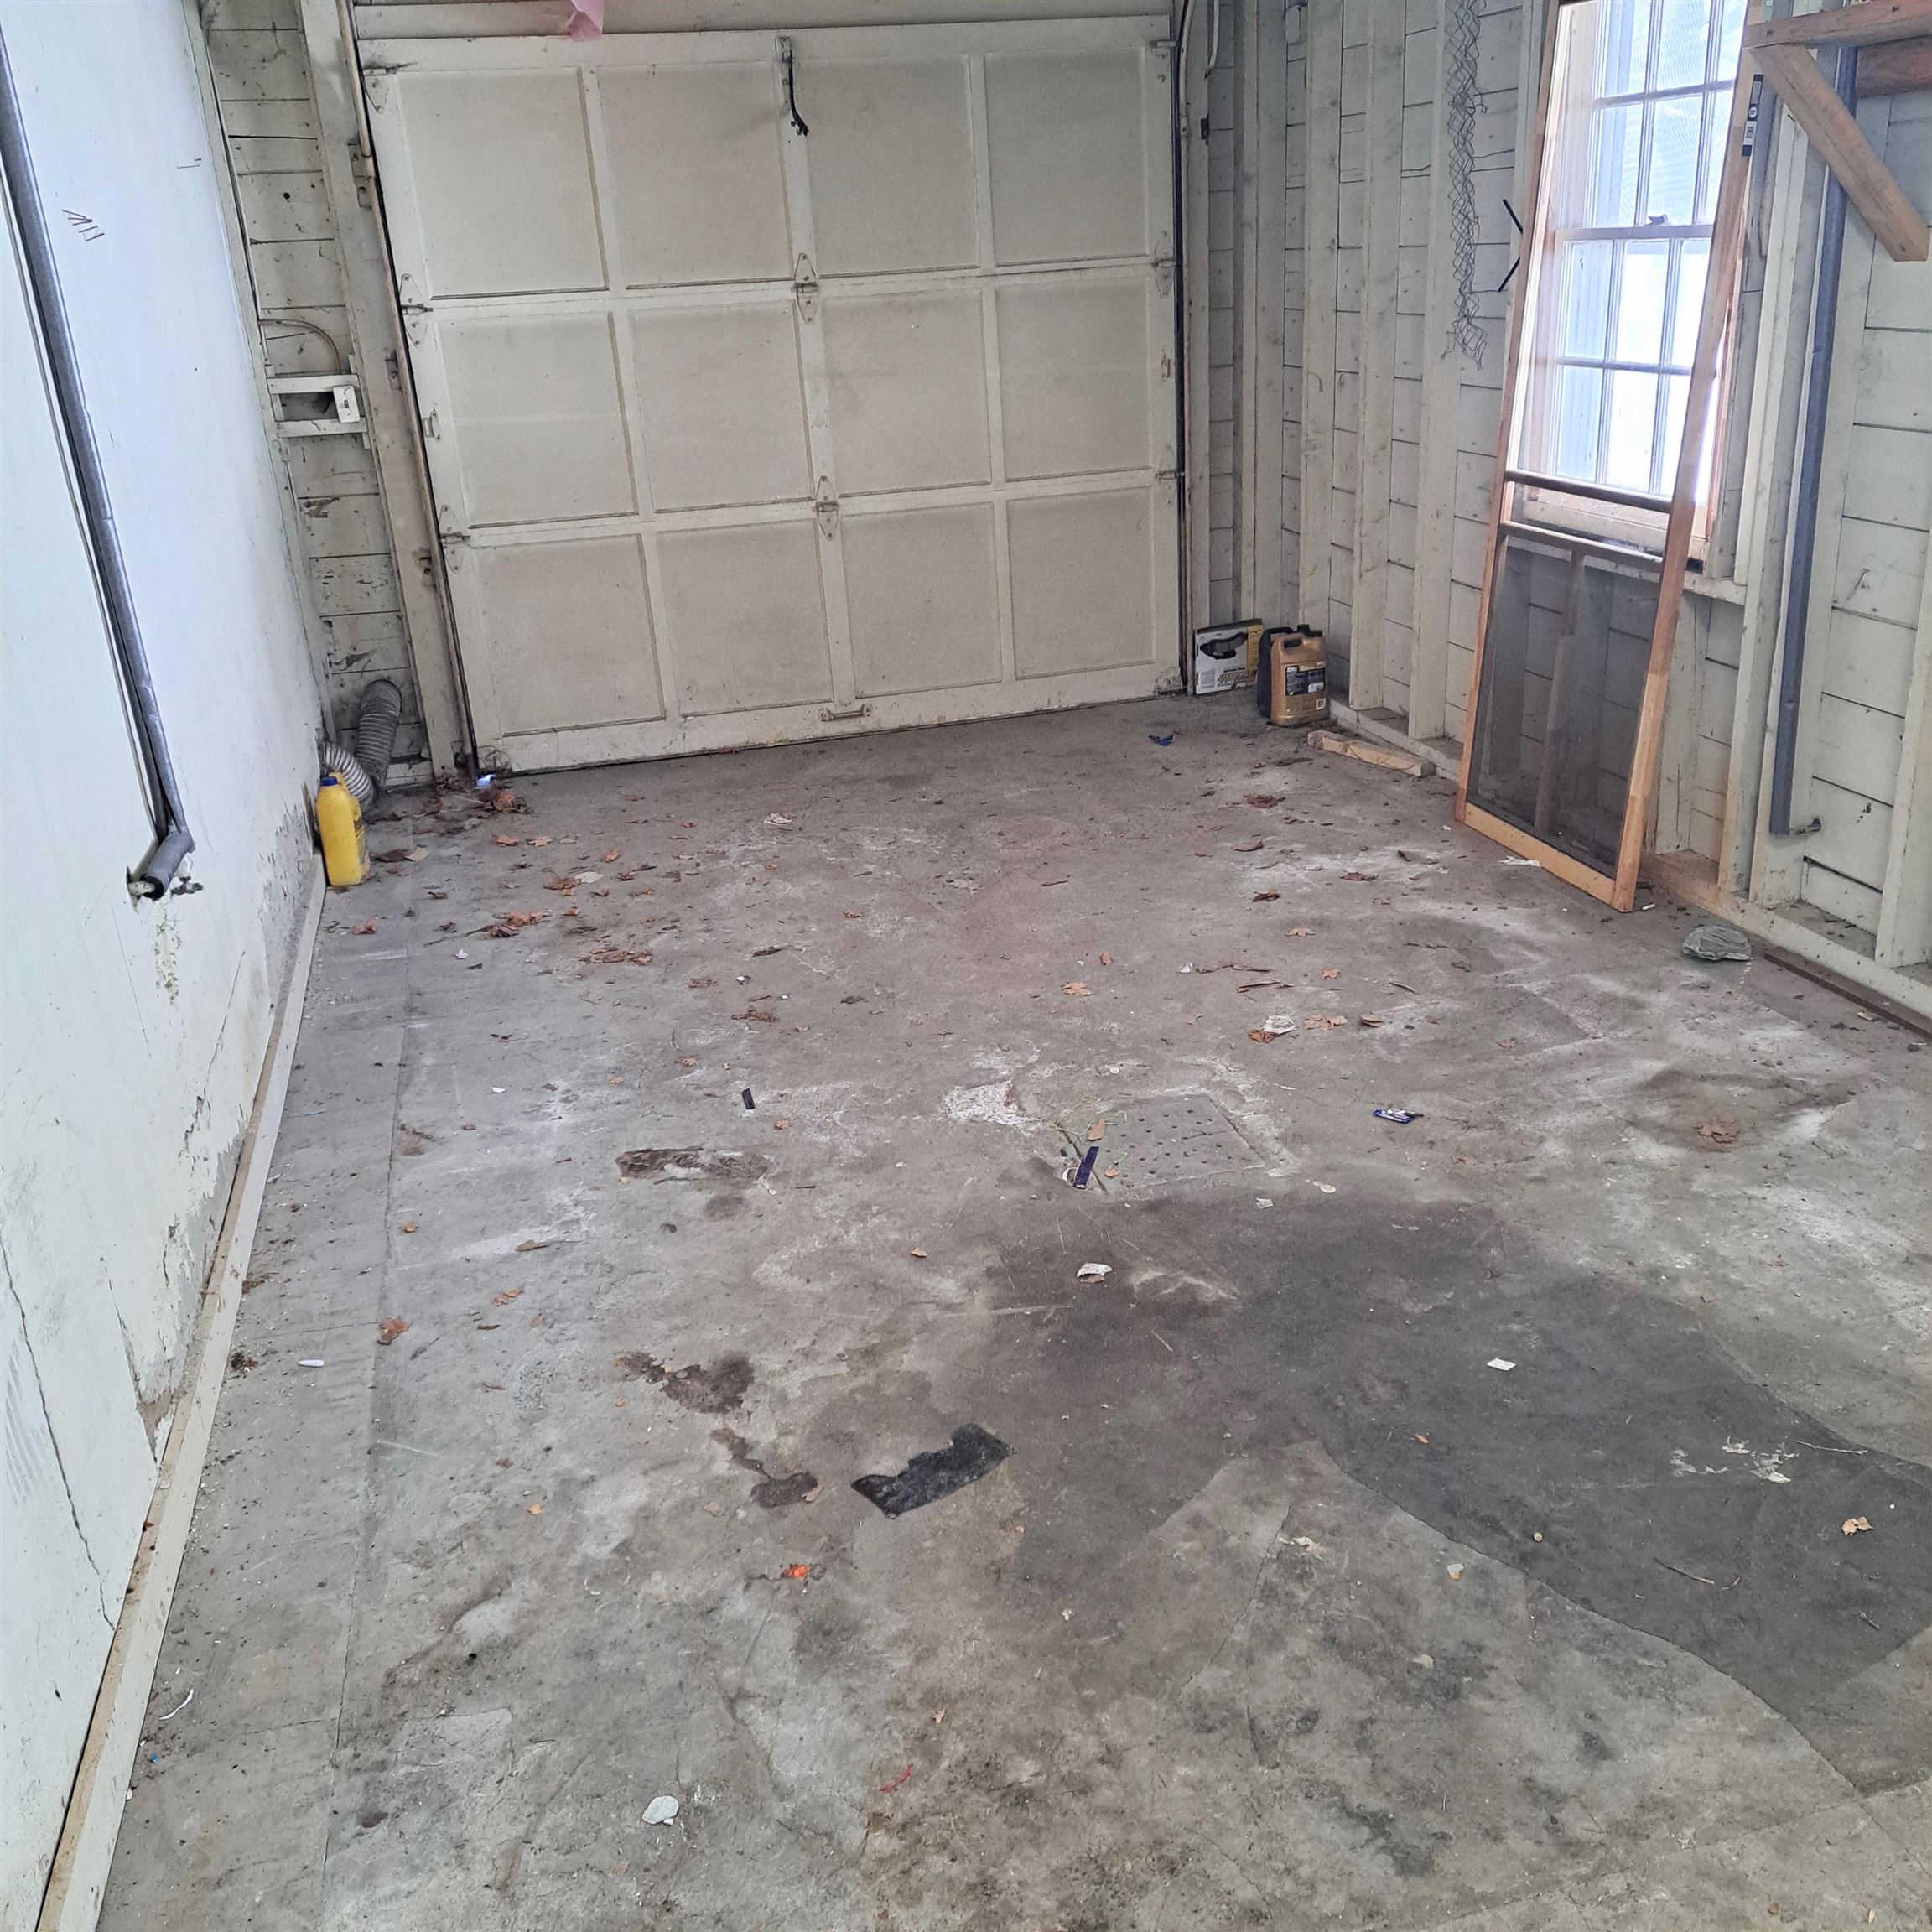 Garage access off mudroom